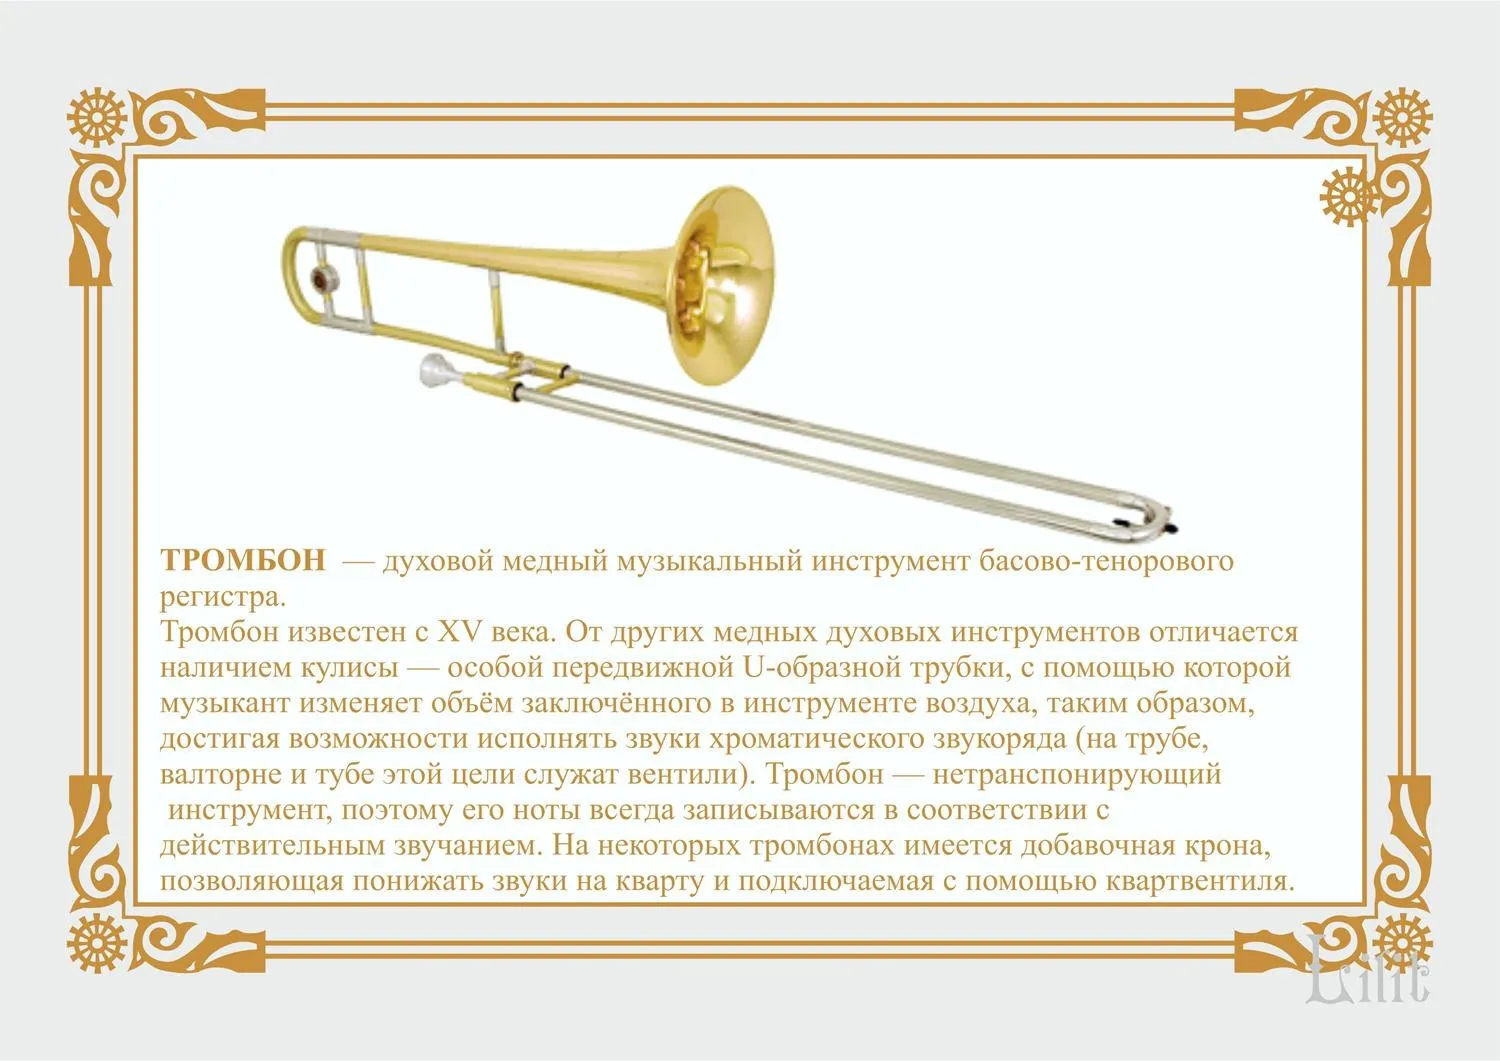 Медные духовые инструменты тромбон